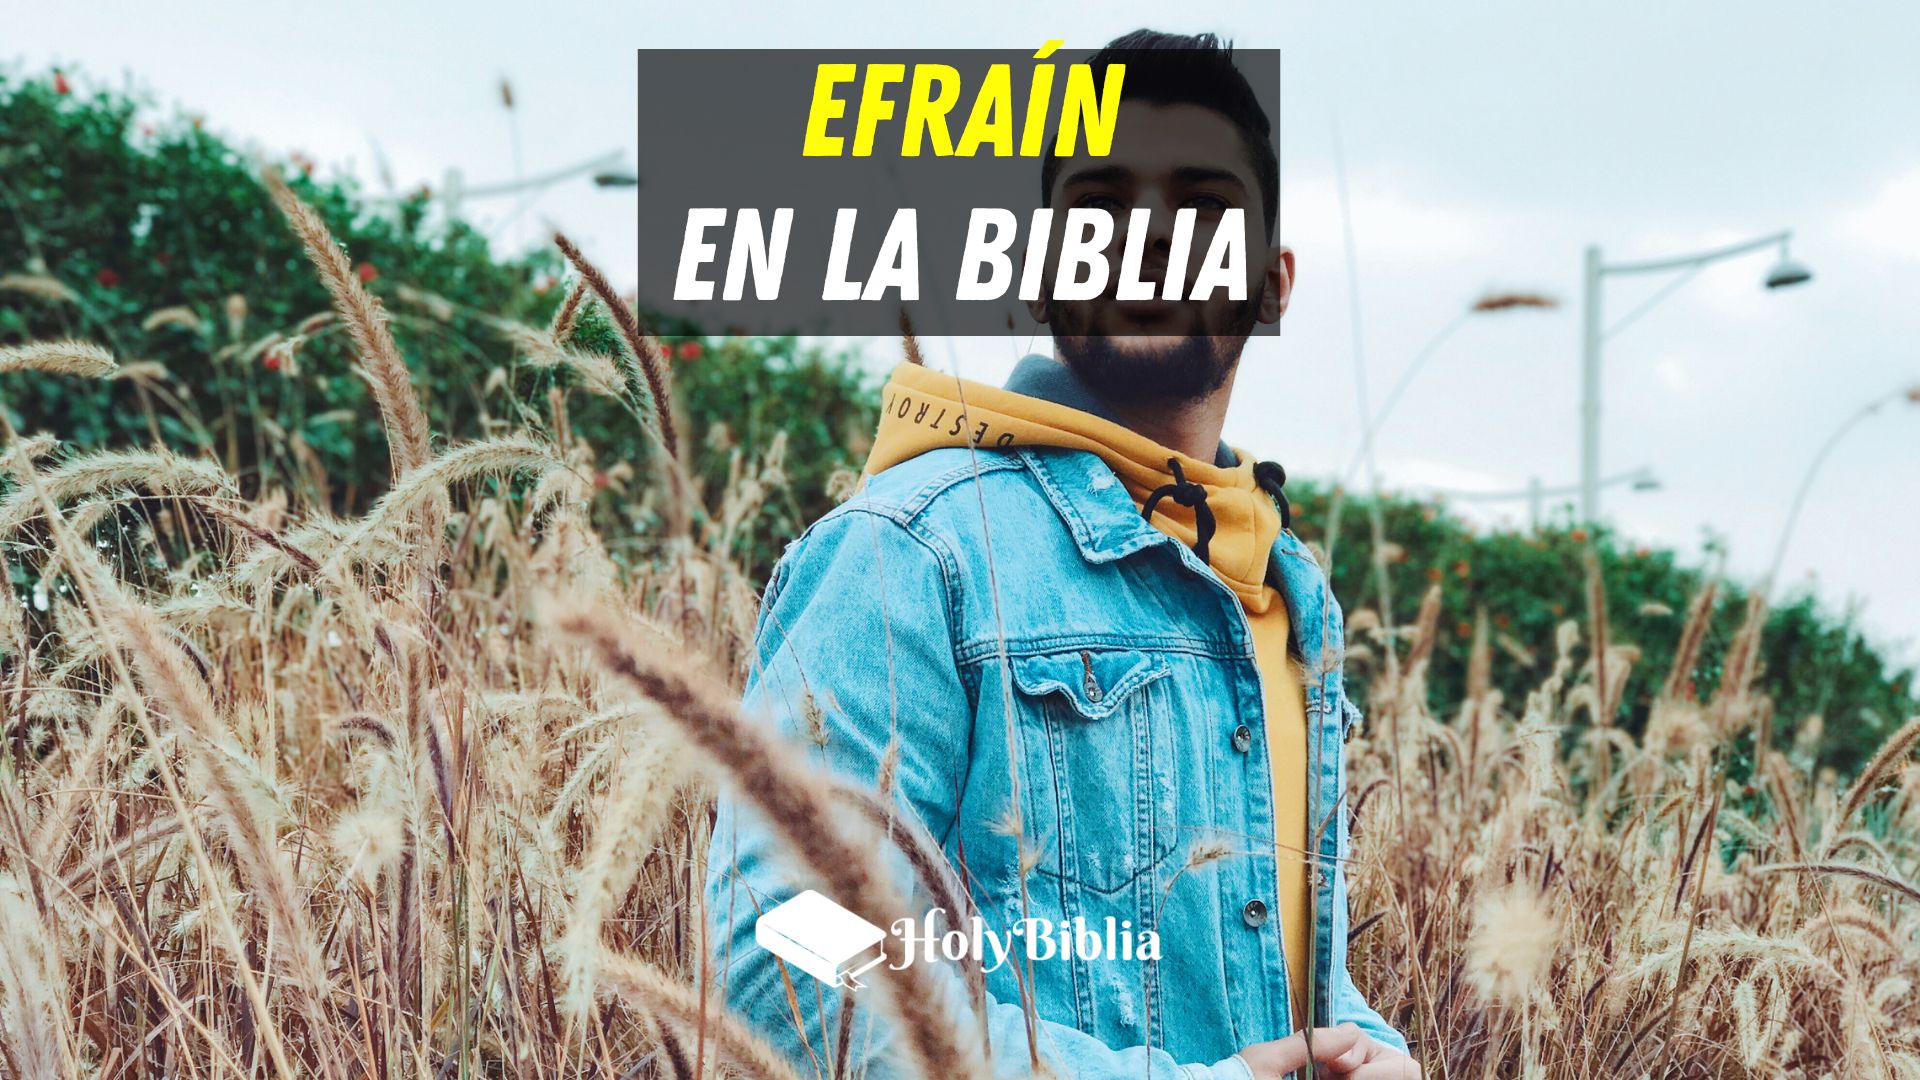 Quién fue Efraín en la Biblia